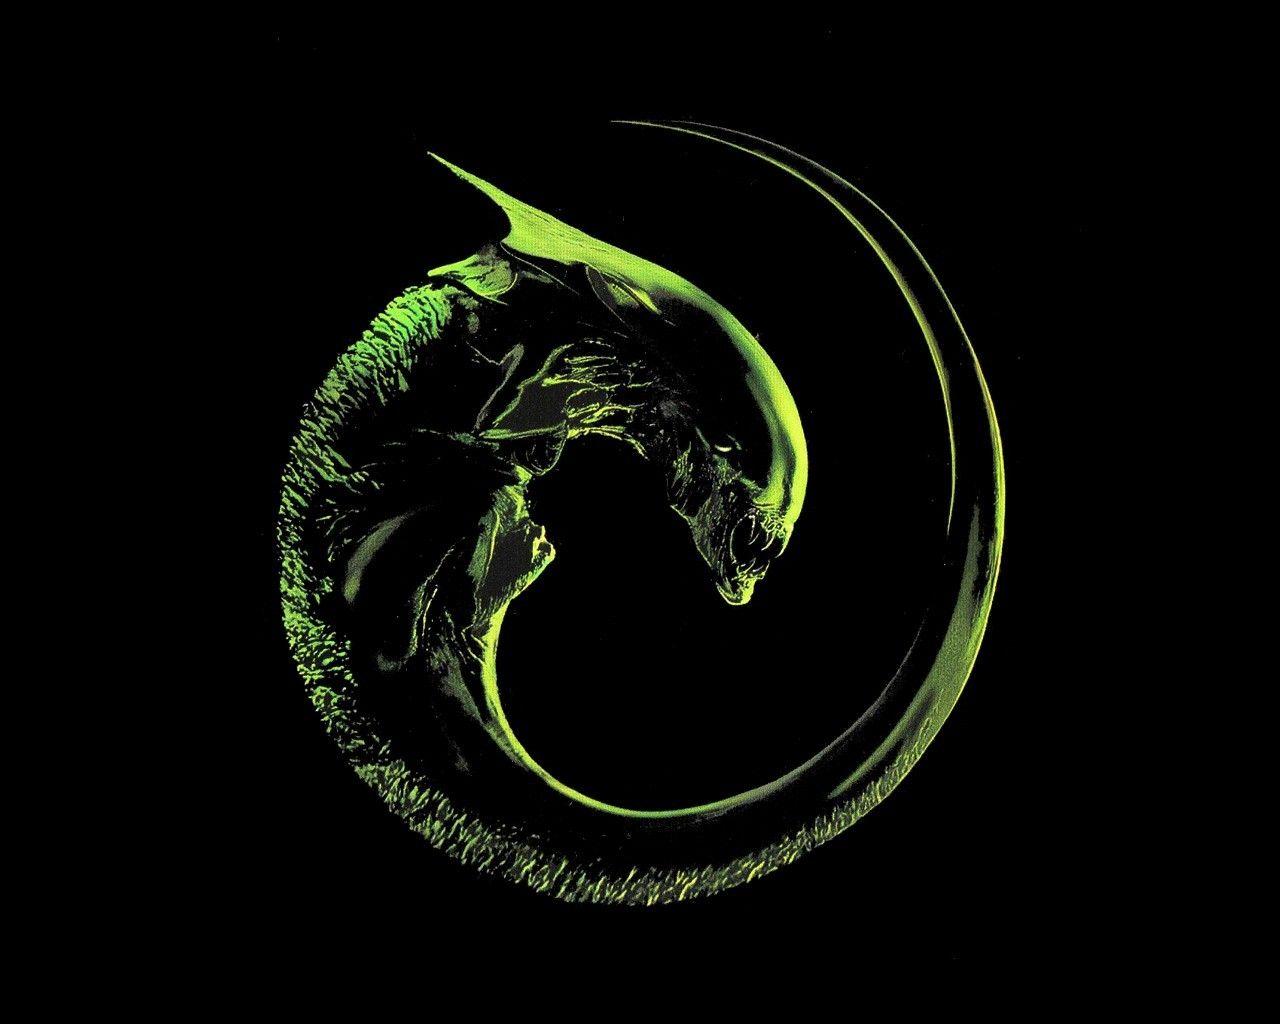 Alien Movie Logo - Wallpaper : illustration, spiral, logo, circle, Alien movie, aliens ...